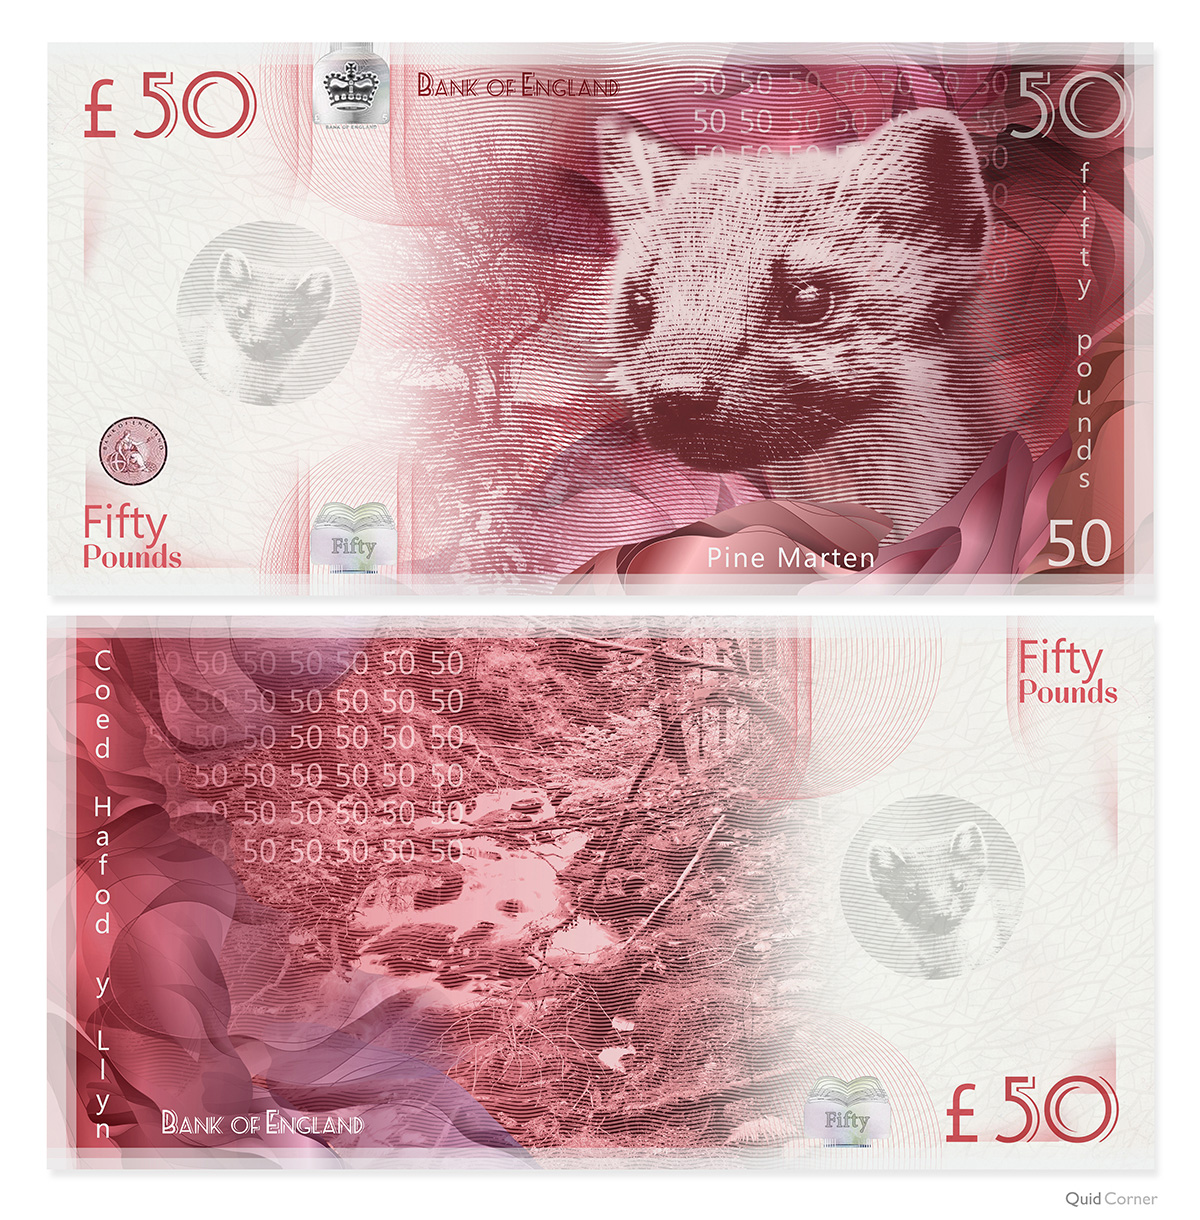 Pine Marten £50 Note